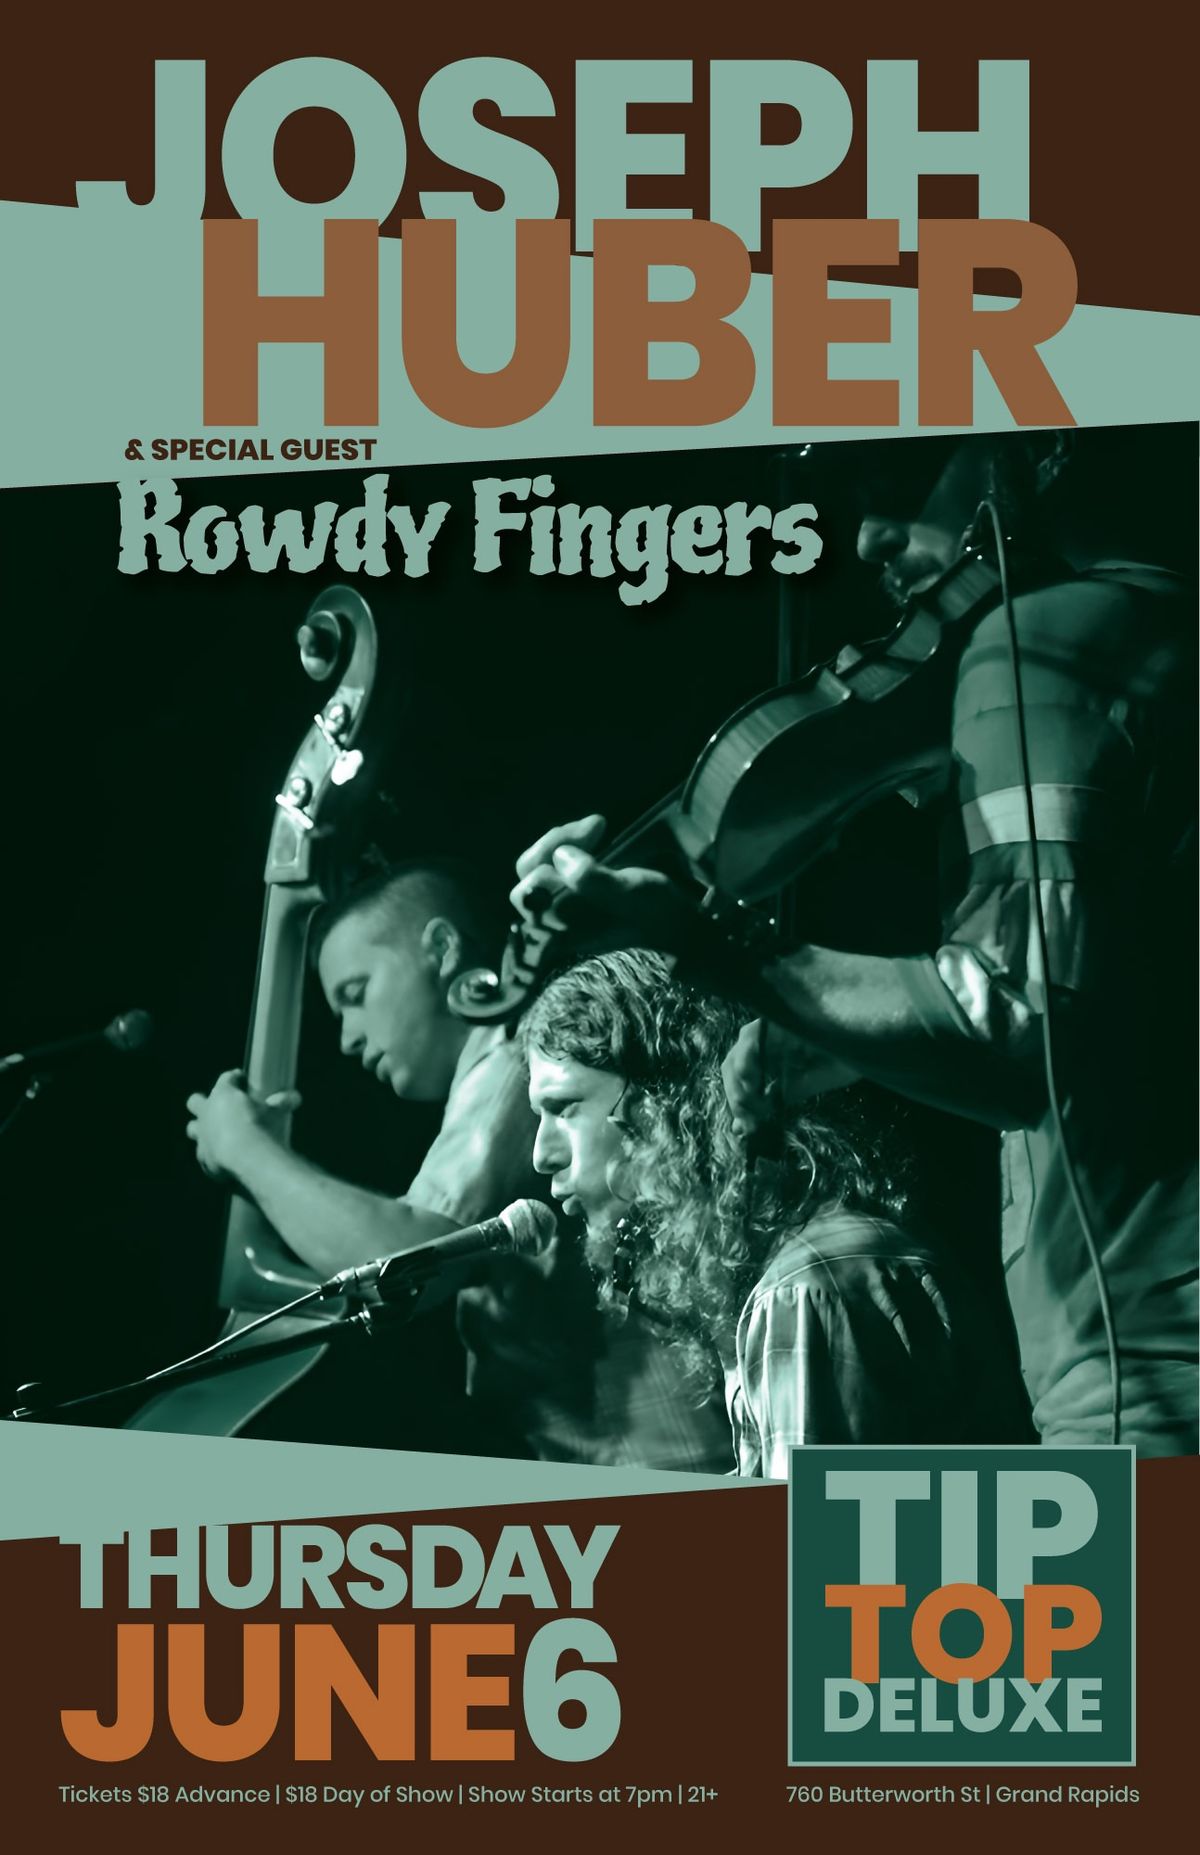 Joseph Huber wsg Rowdy Fingers